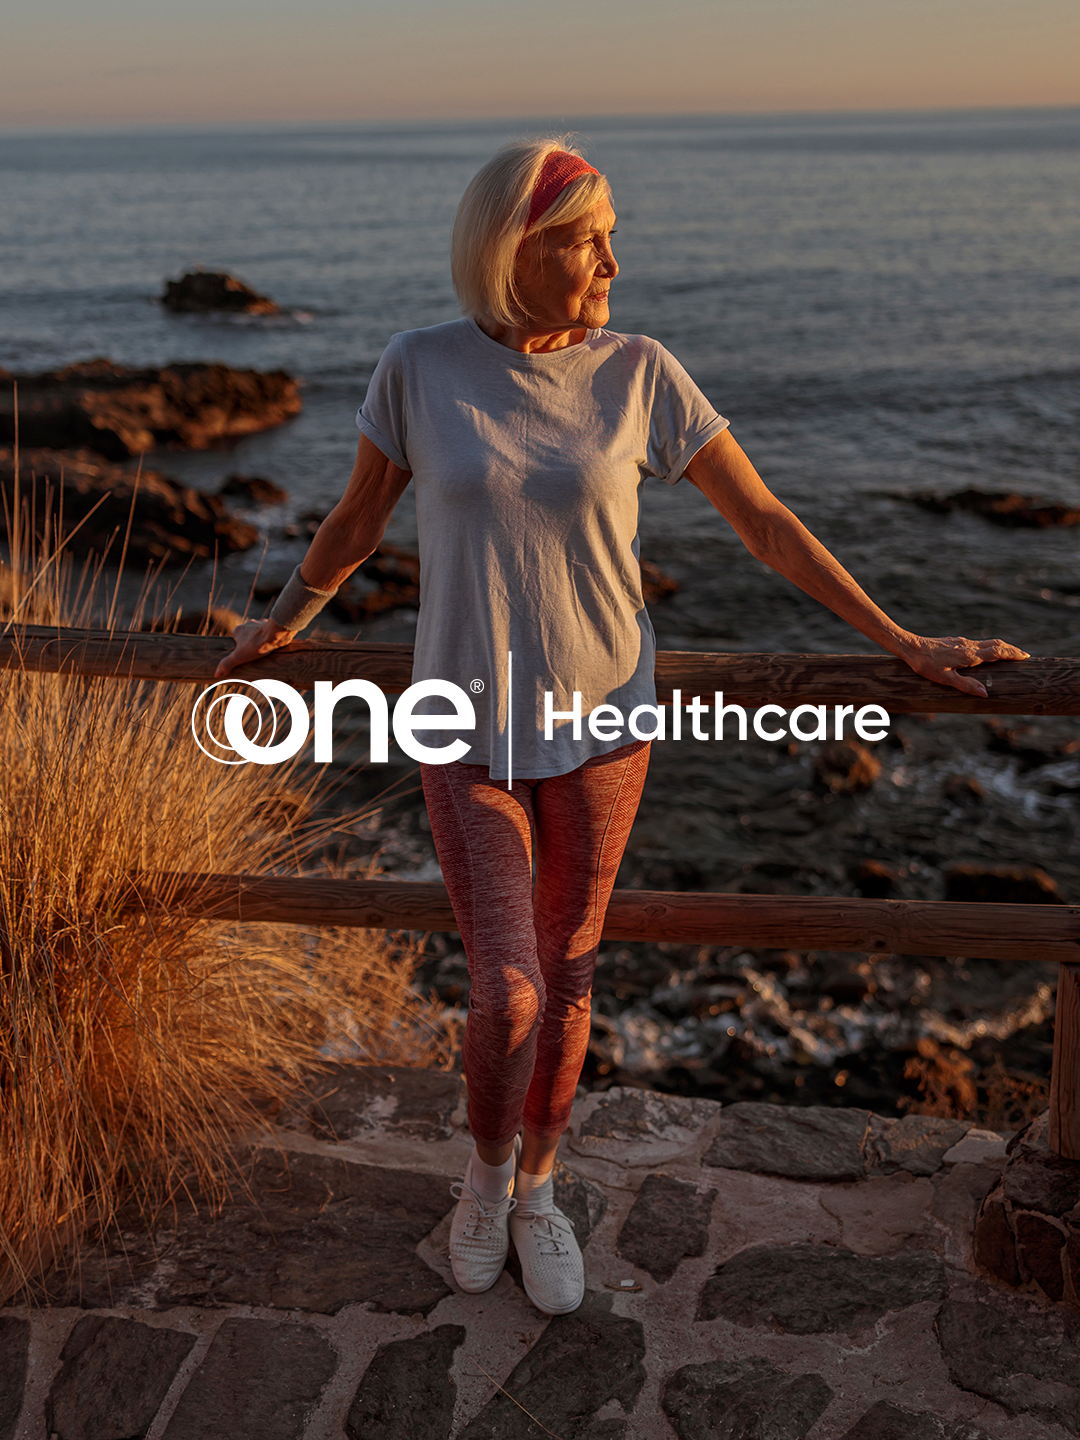 Healthcare logo design concept over a backdrop featuring a healthy senior woman by the sea.